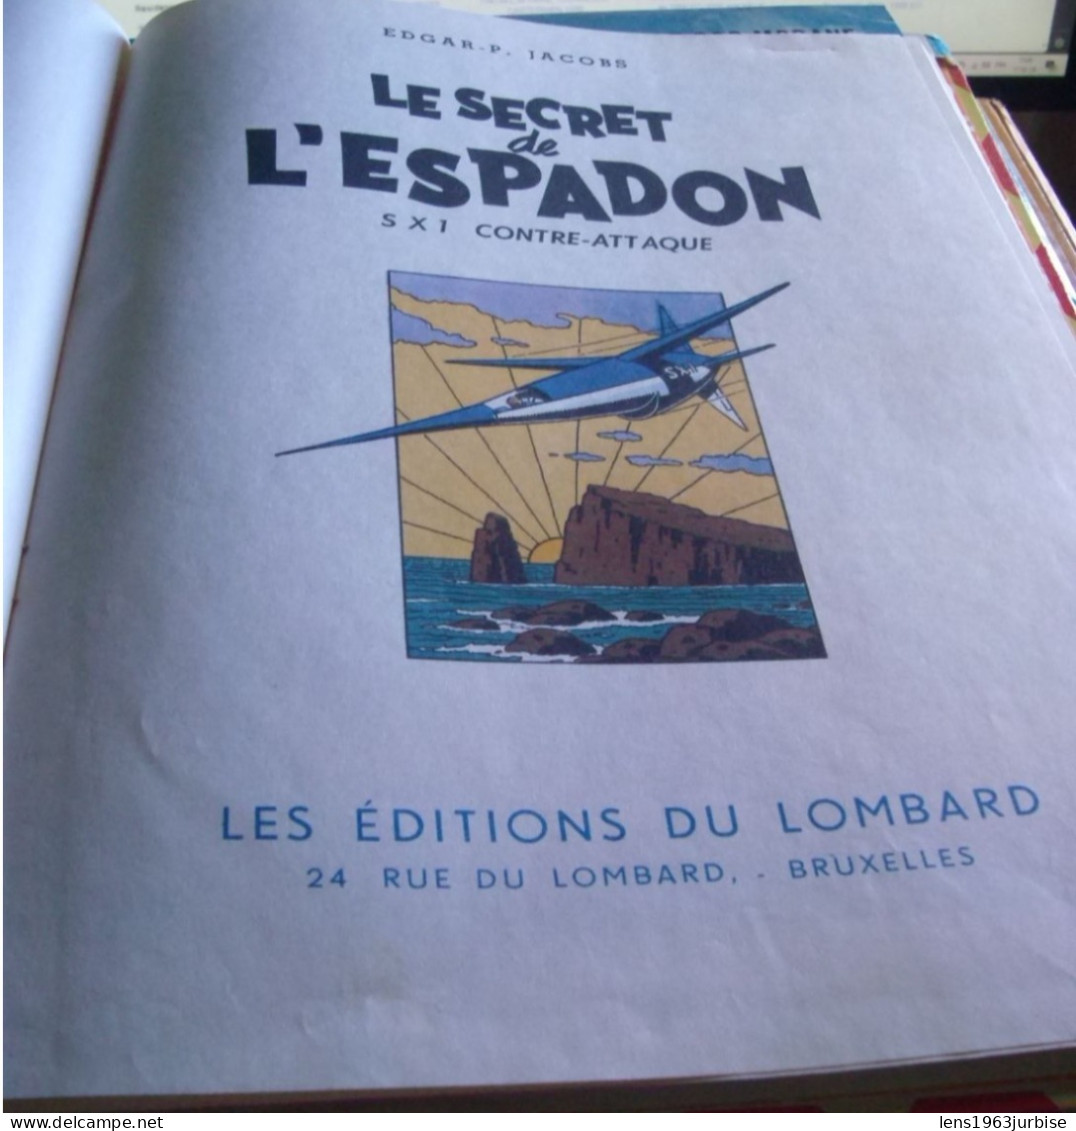 Le Secret De L'espadon  ; SX 1 Contre - Attaque , Edgar P Jacob , Lombard  ( 1957 ) BE  Trace D'usage - Blake & Mortimer